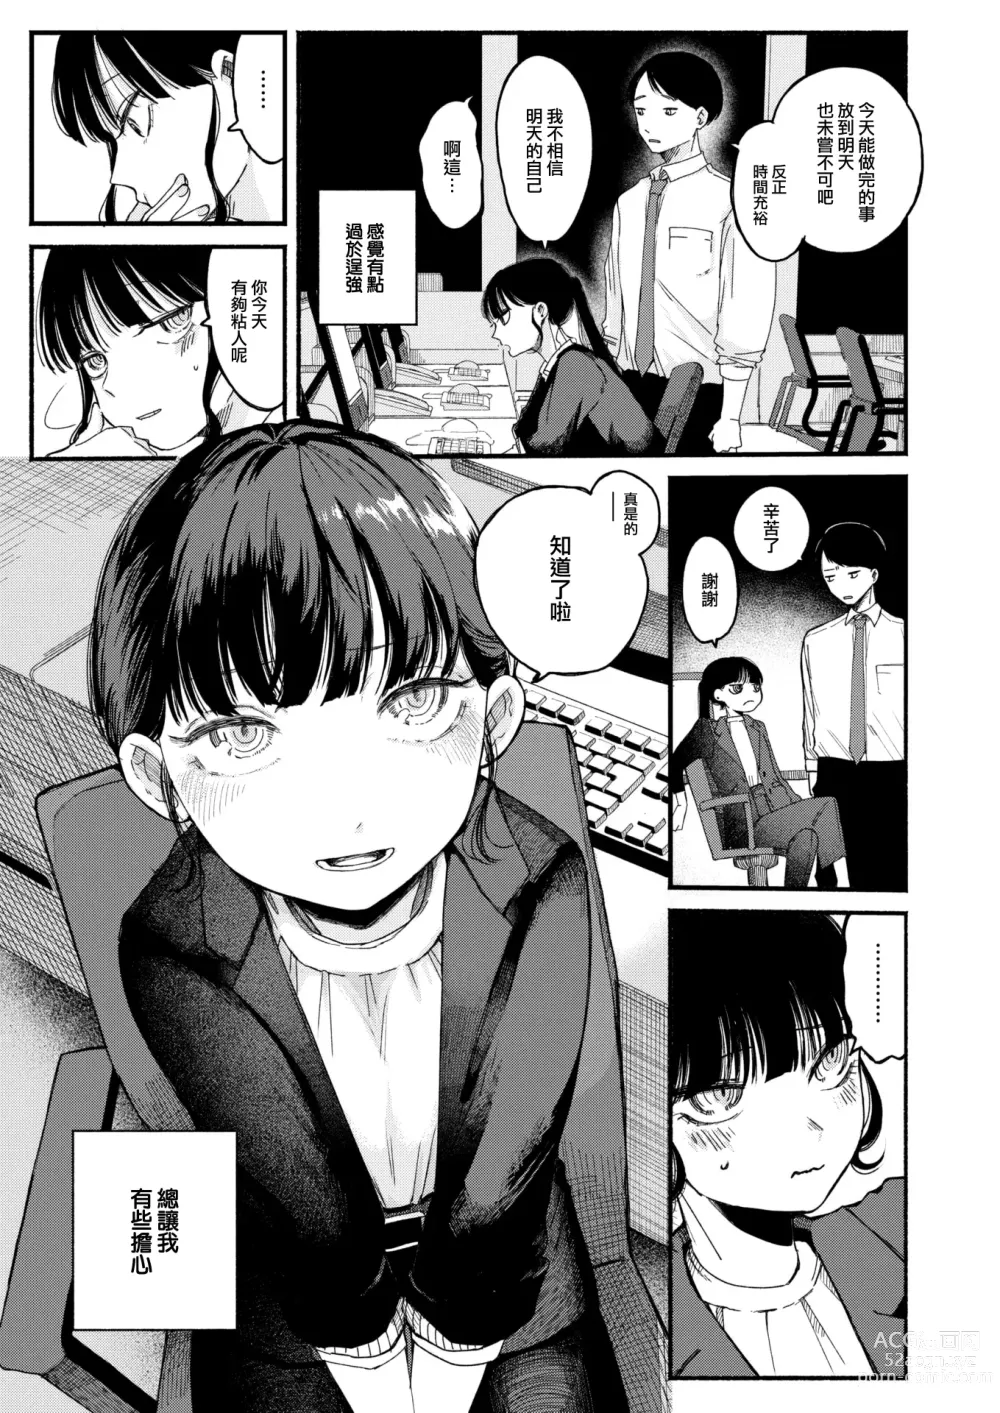 Page 4 of manga Hitonokimo Shiranaide